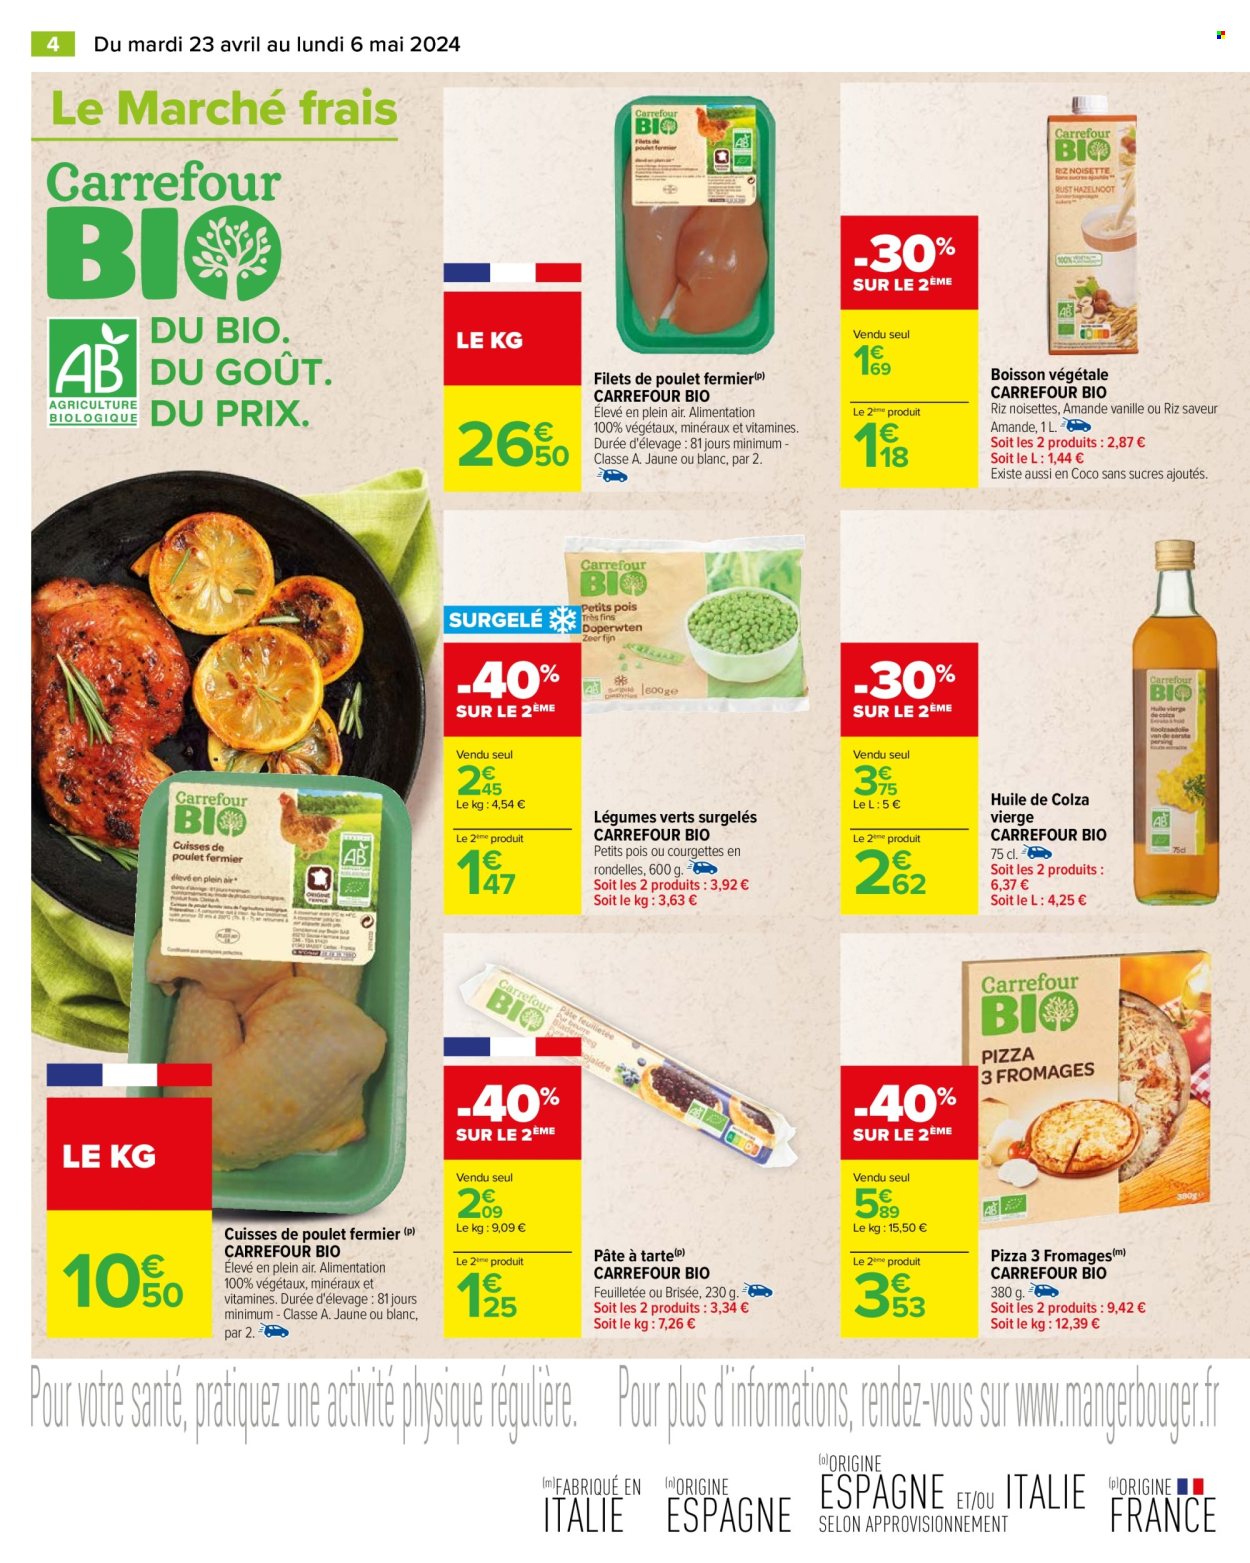 thumbnail - Catalogue Carrefour Hypermarchés - 23/04/2024 - 06/05/2024 - Produits soldés - boisson végétale, filet de poulet, viande de poulet, huile, huile de colza, cuisses de poulet, pâte à tarte, pizza, fromage. Page 6.